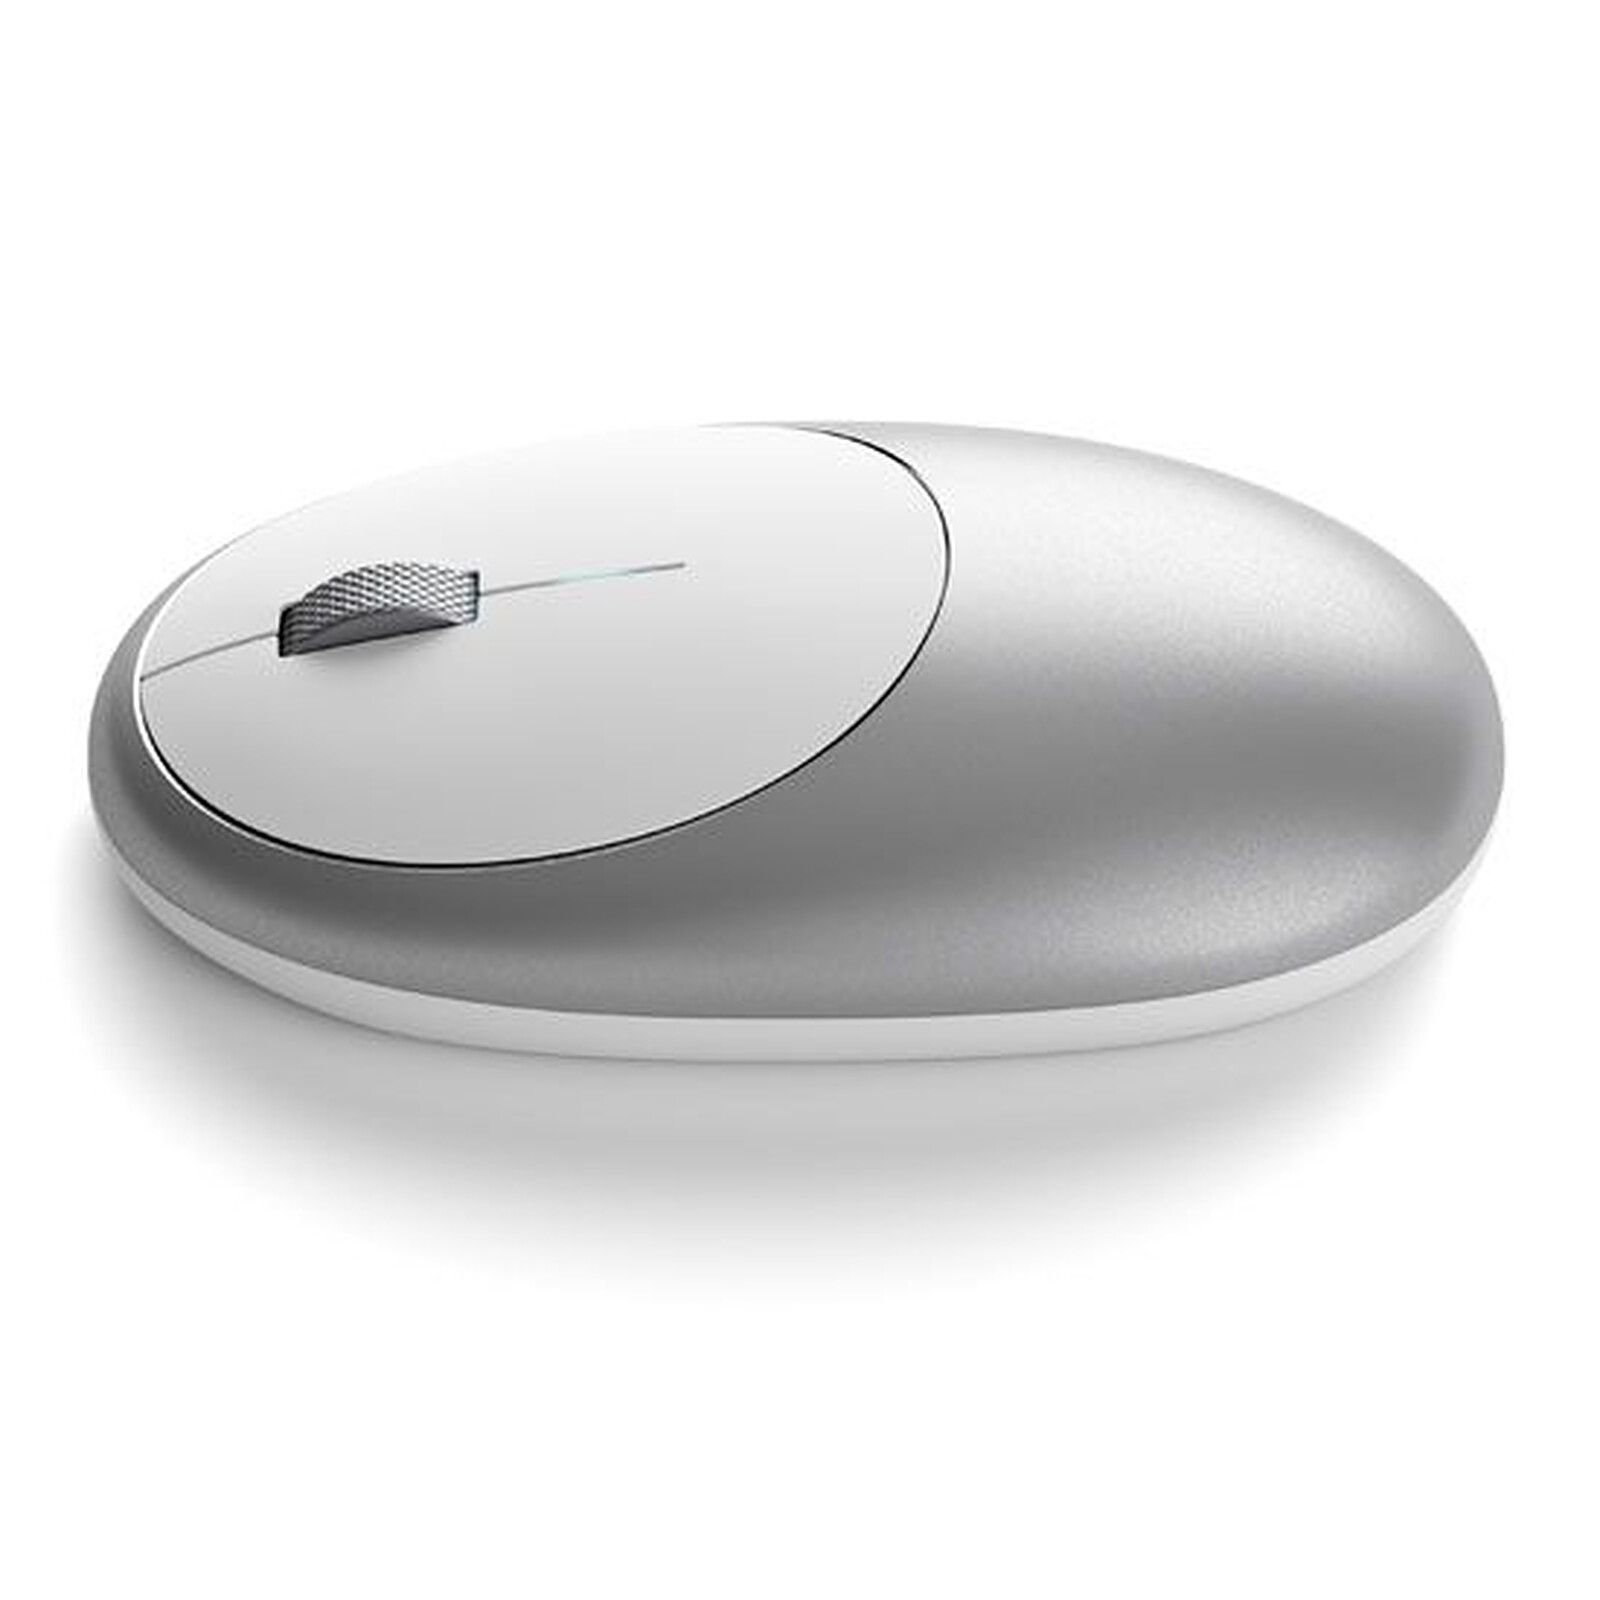 Microsoft ARC Mouse Lilas - Souris PC - Garantie 3 ans LDLC